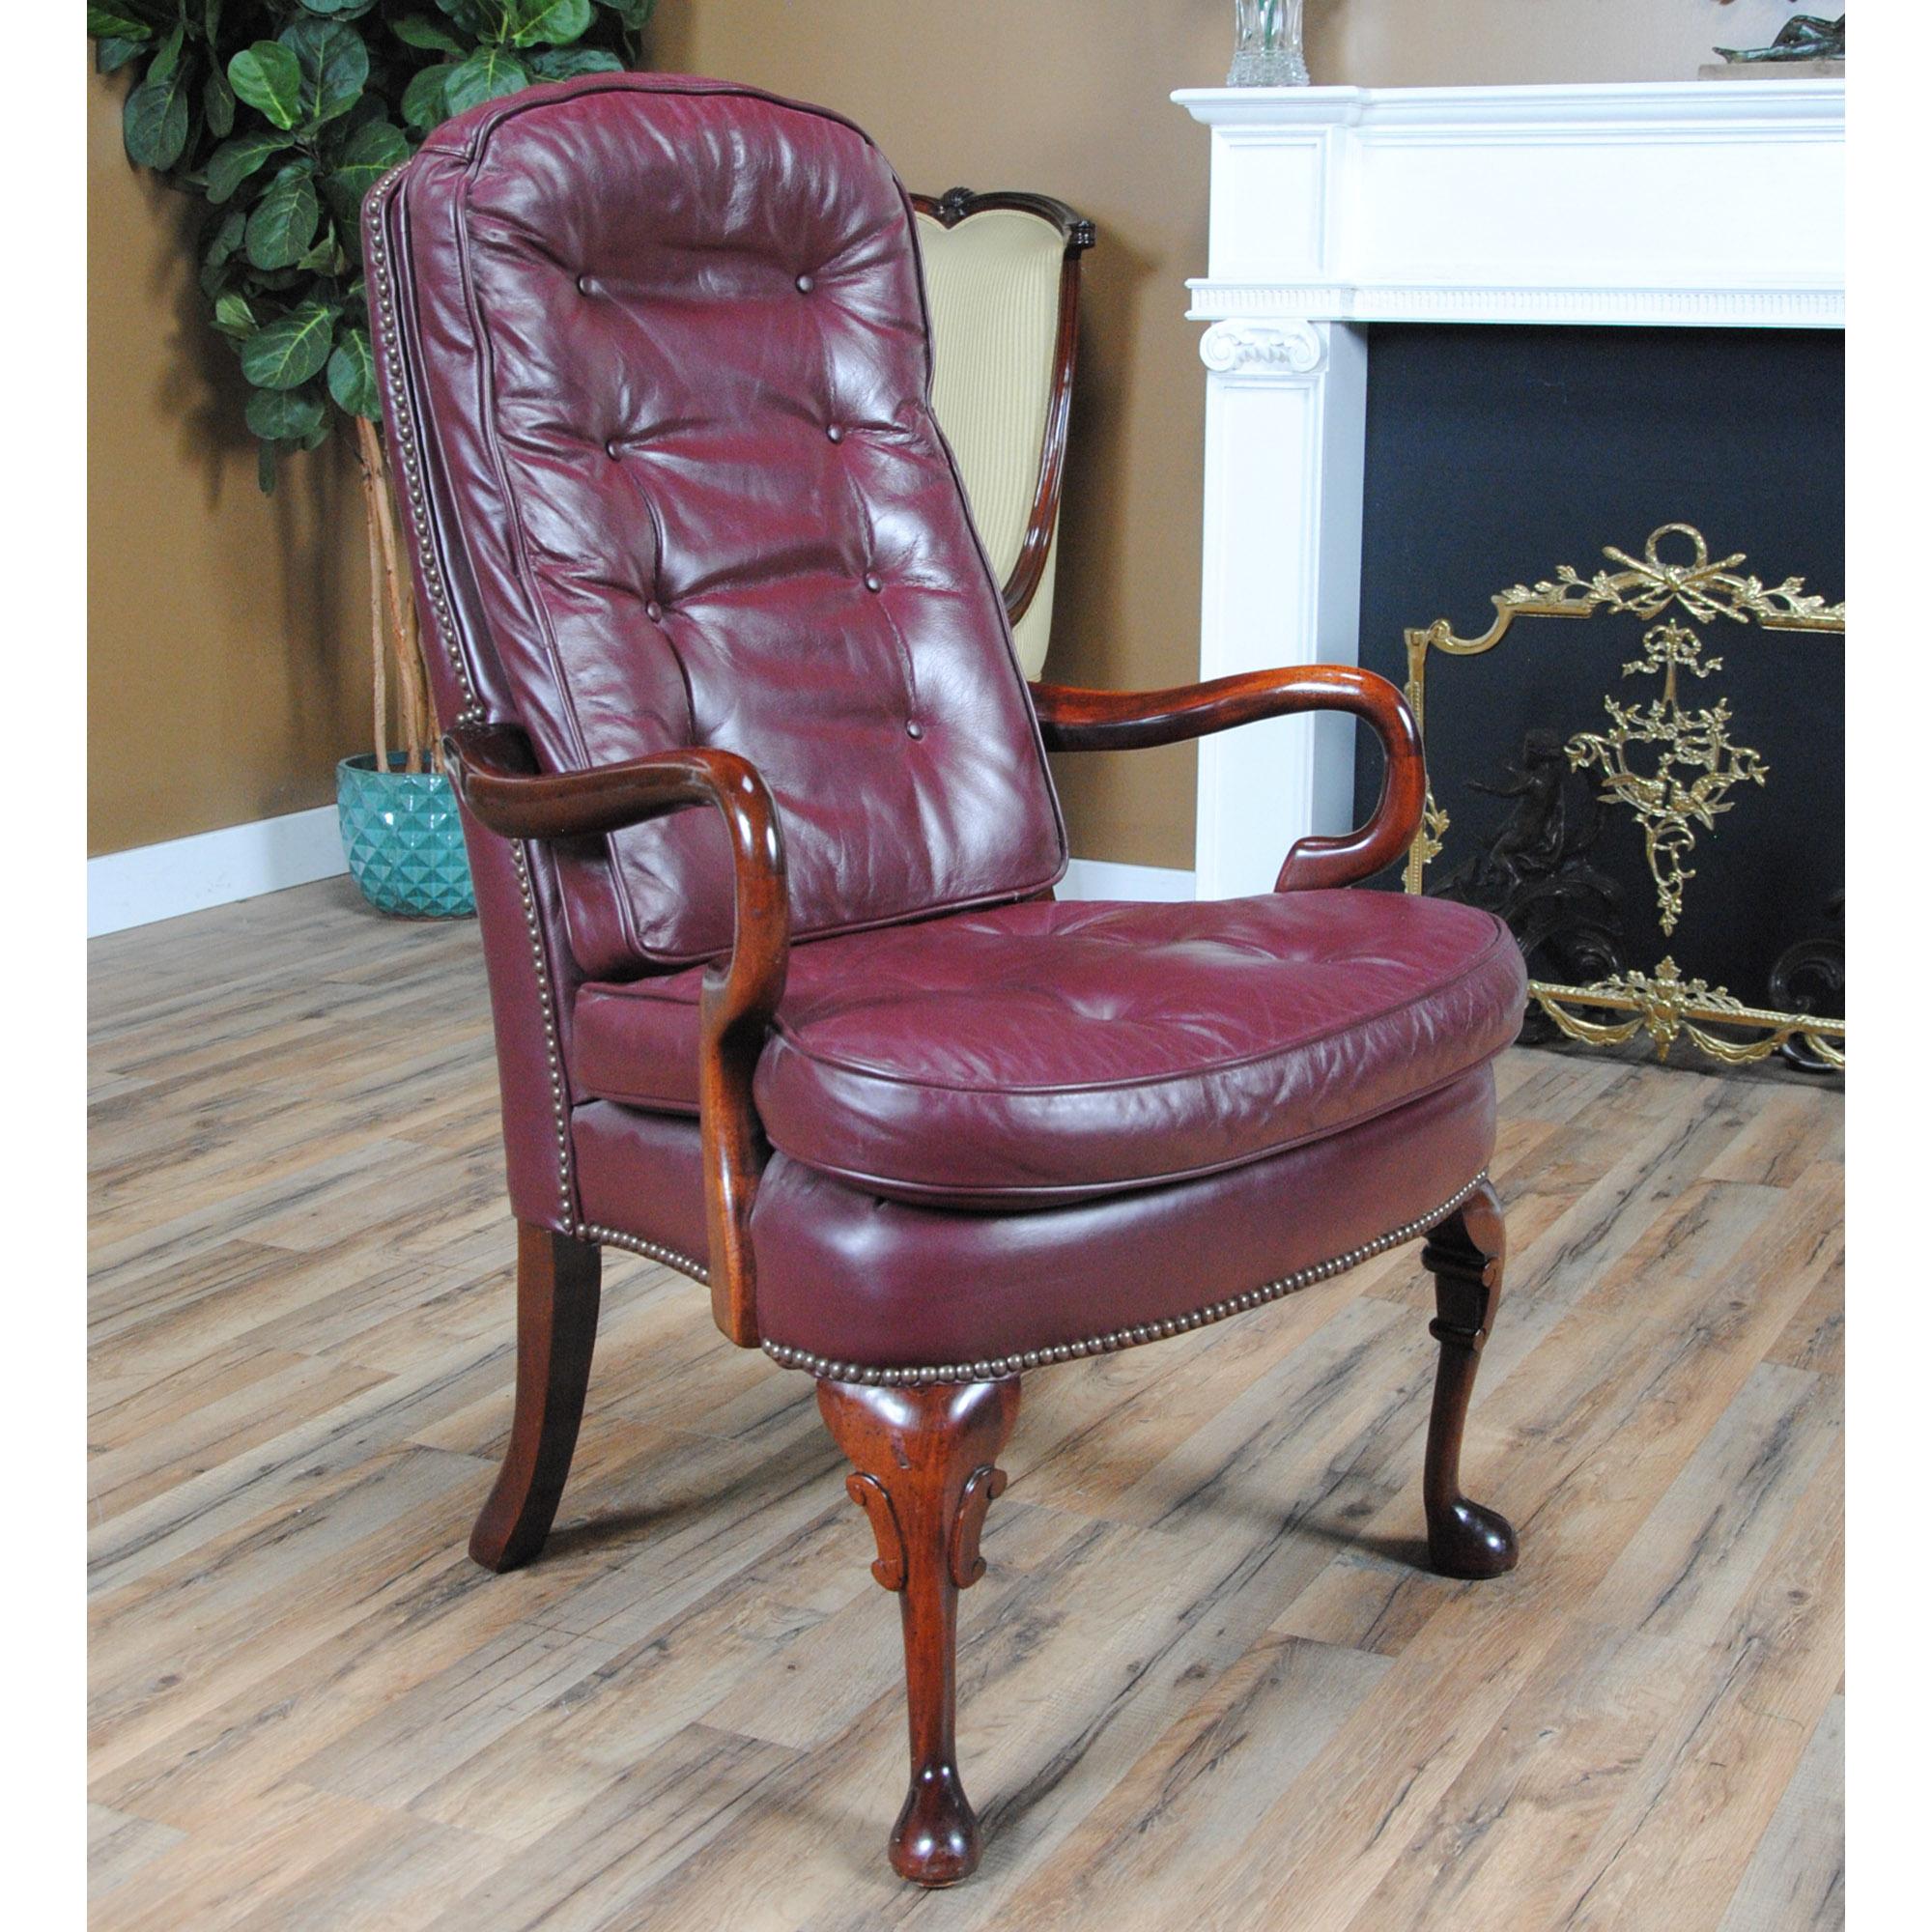 Une chaise de bureau classique en cuir vintage en excellent état d'origine, telle qu'elle a été trouvée.

À la fois élégante et incroyablement détaillée, cette magnifique chaise de bureau en cuir Vintage Classic a tout ce qu'il faut pour être le